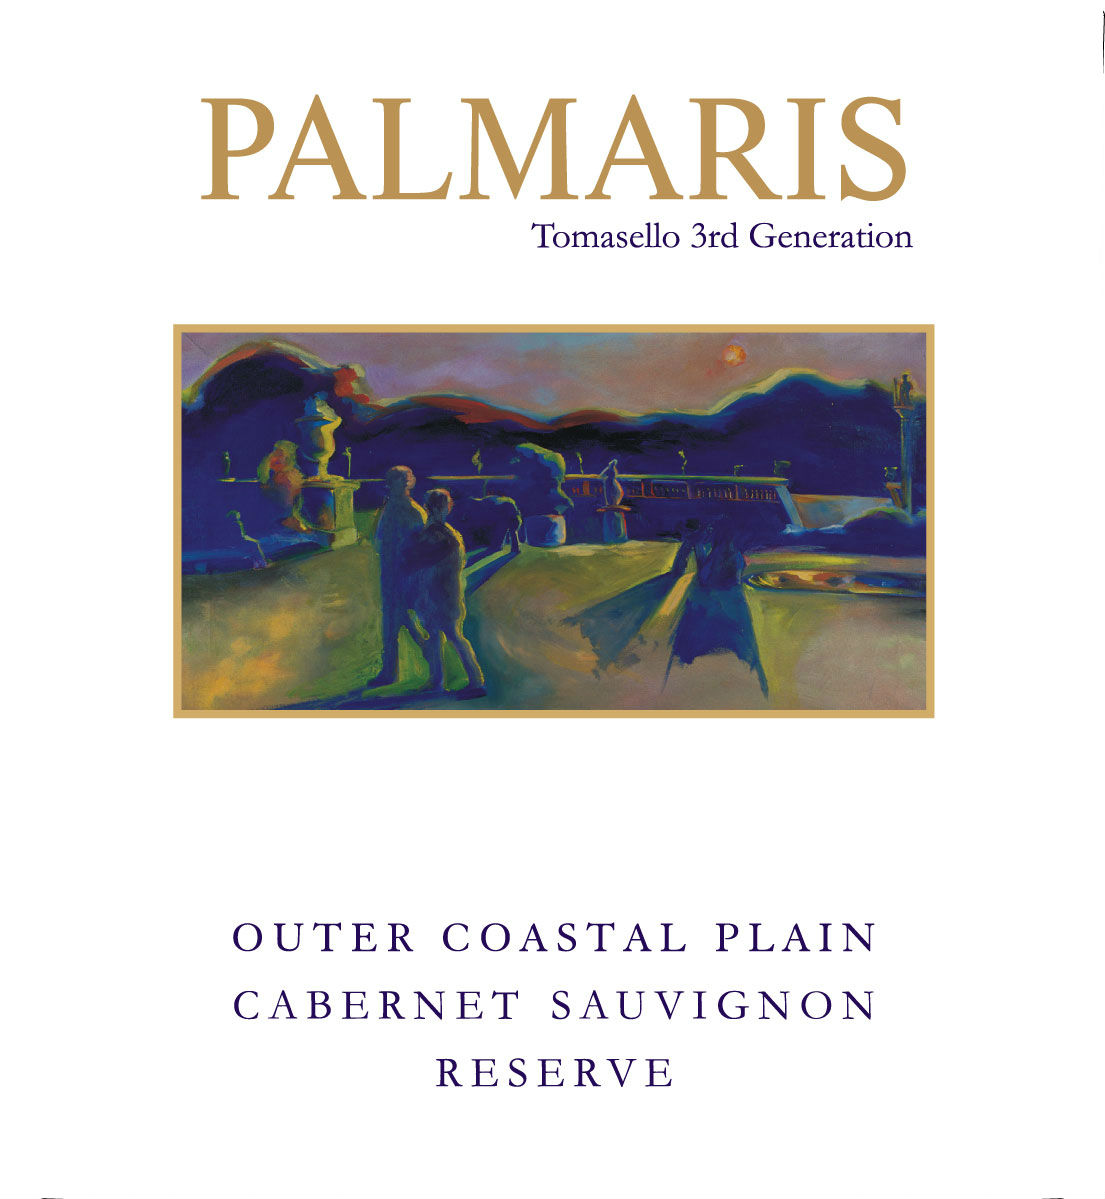 Product Image for Palmaris 2010 Outer Coastal Plain Cabernet Sauvignon Reserve